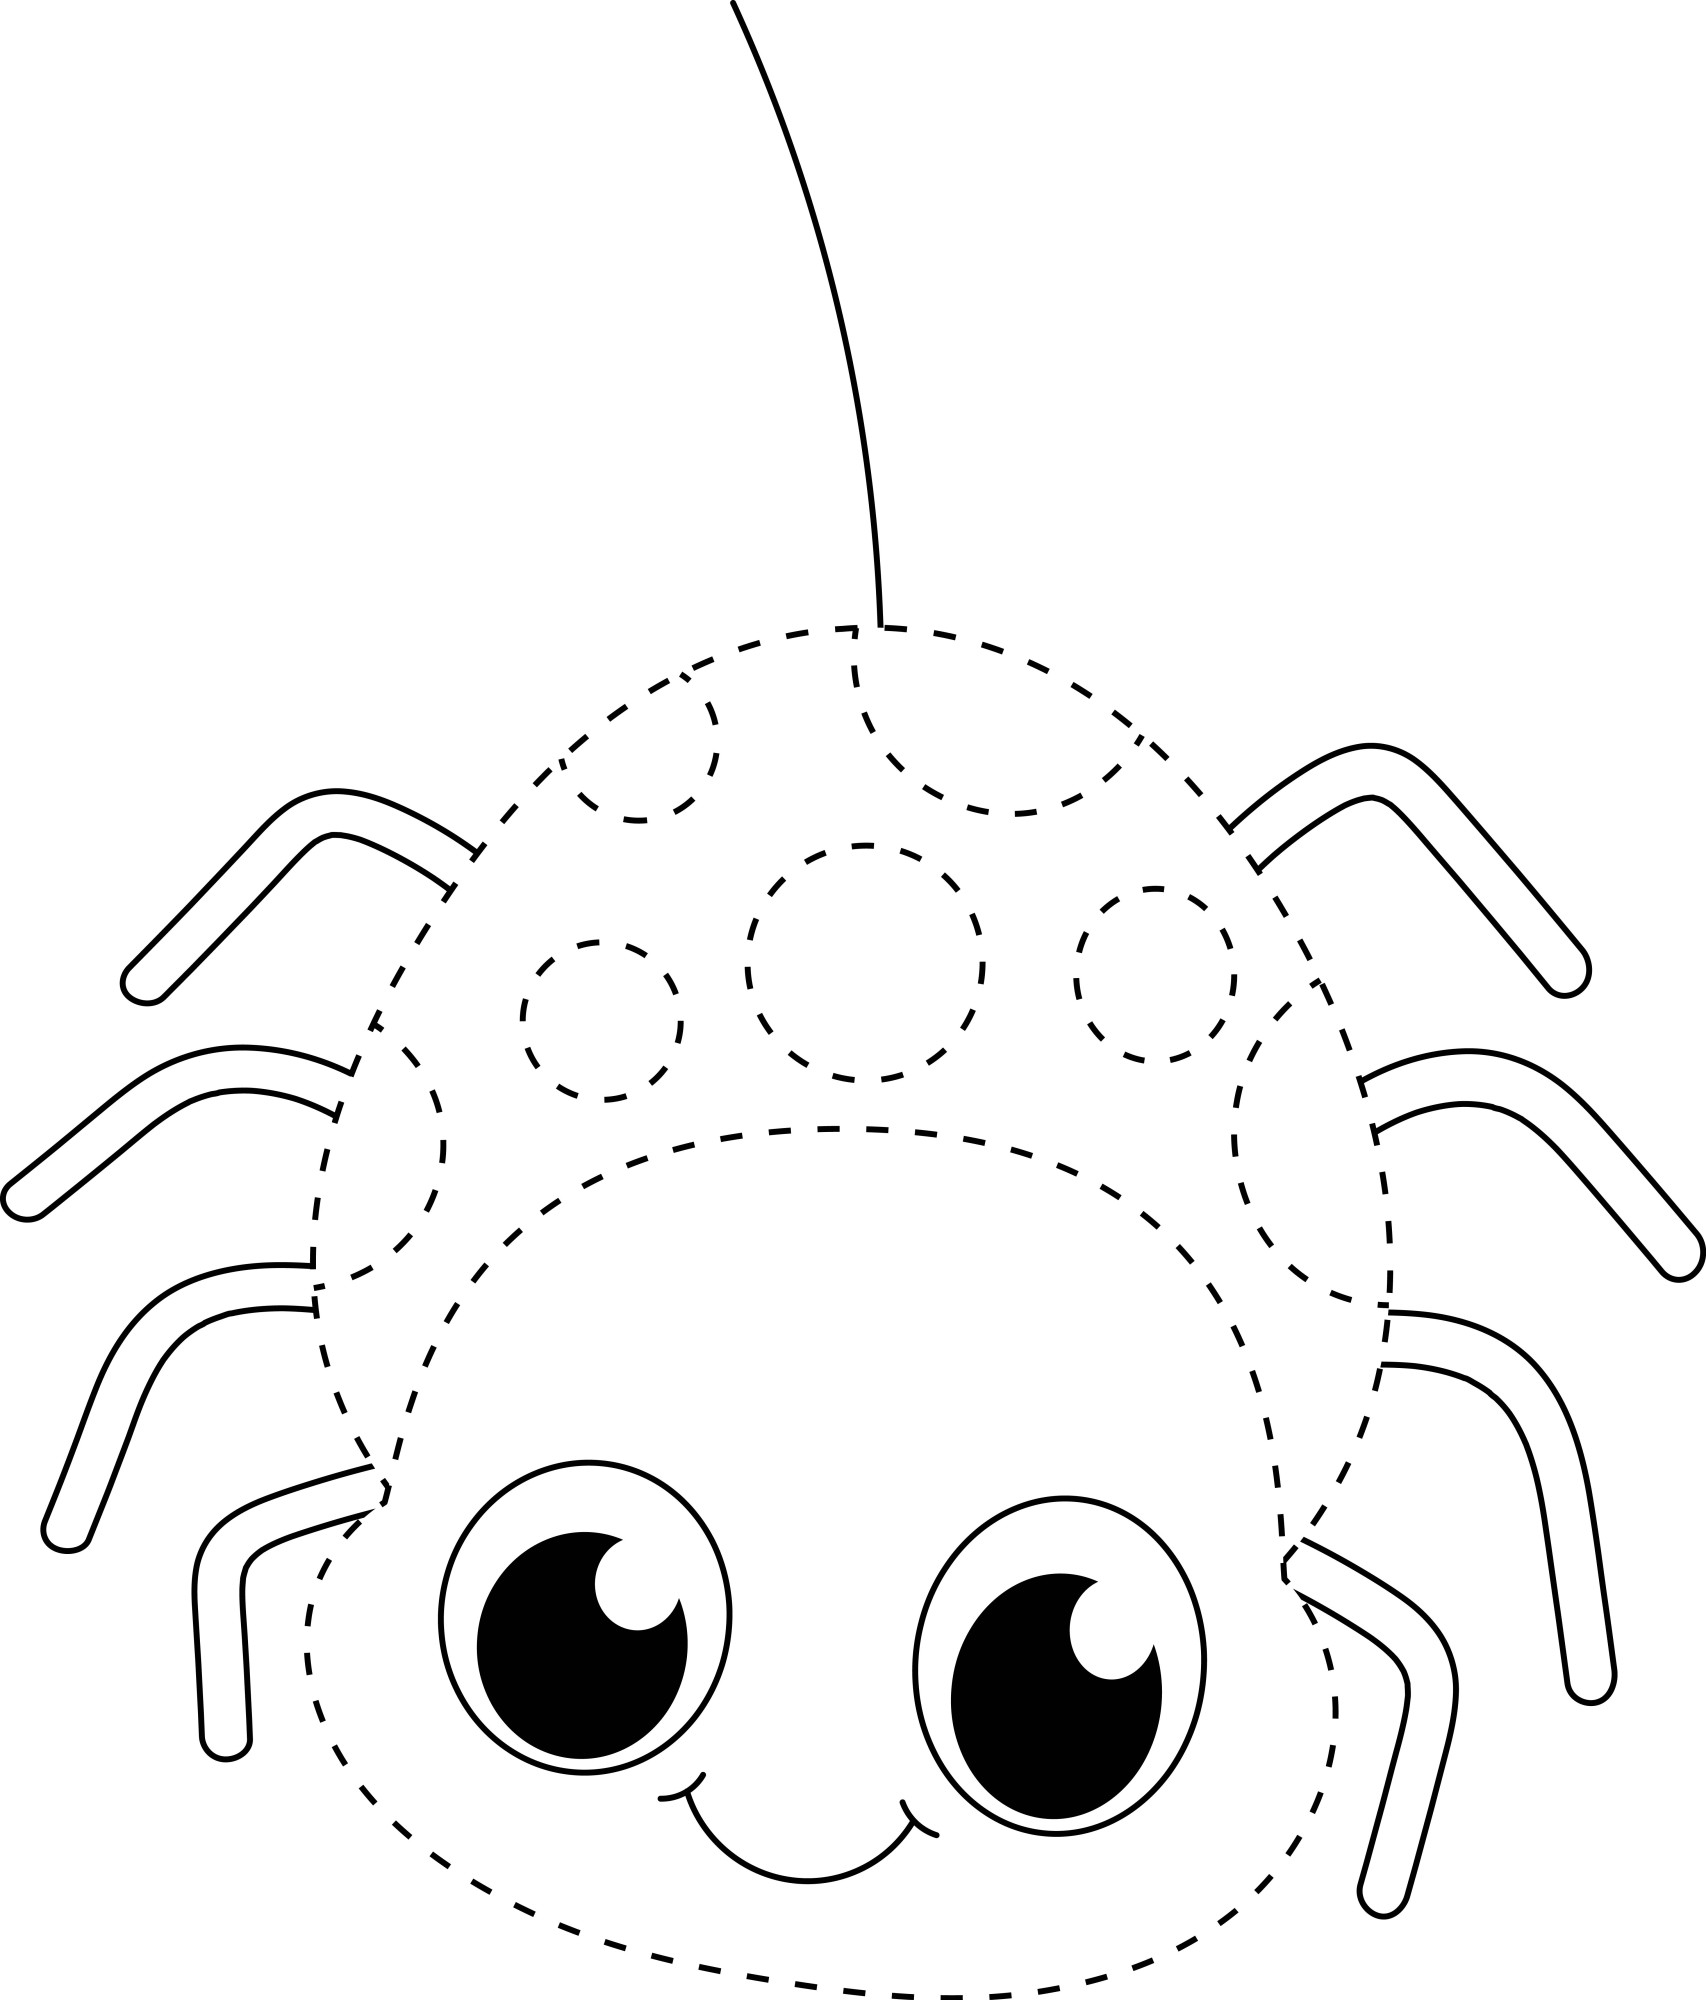 Раскраска для детей: забавный паук по точкам